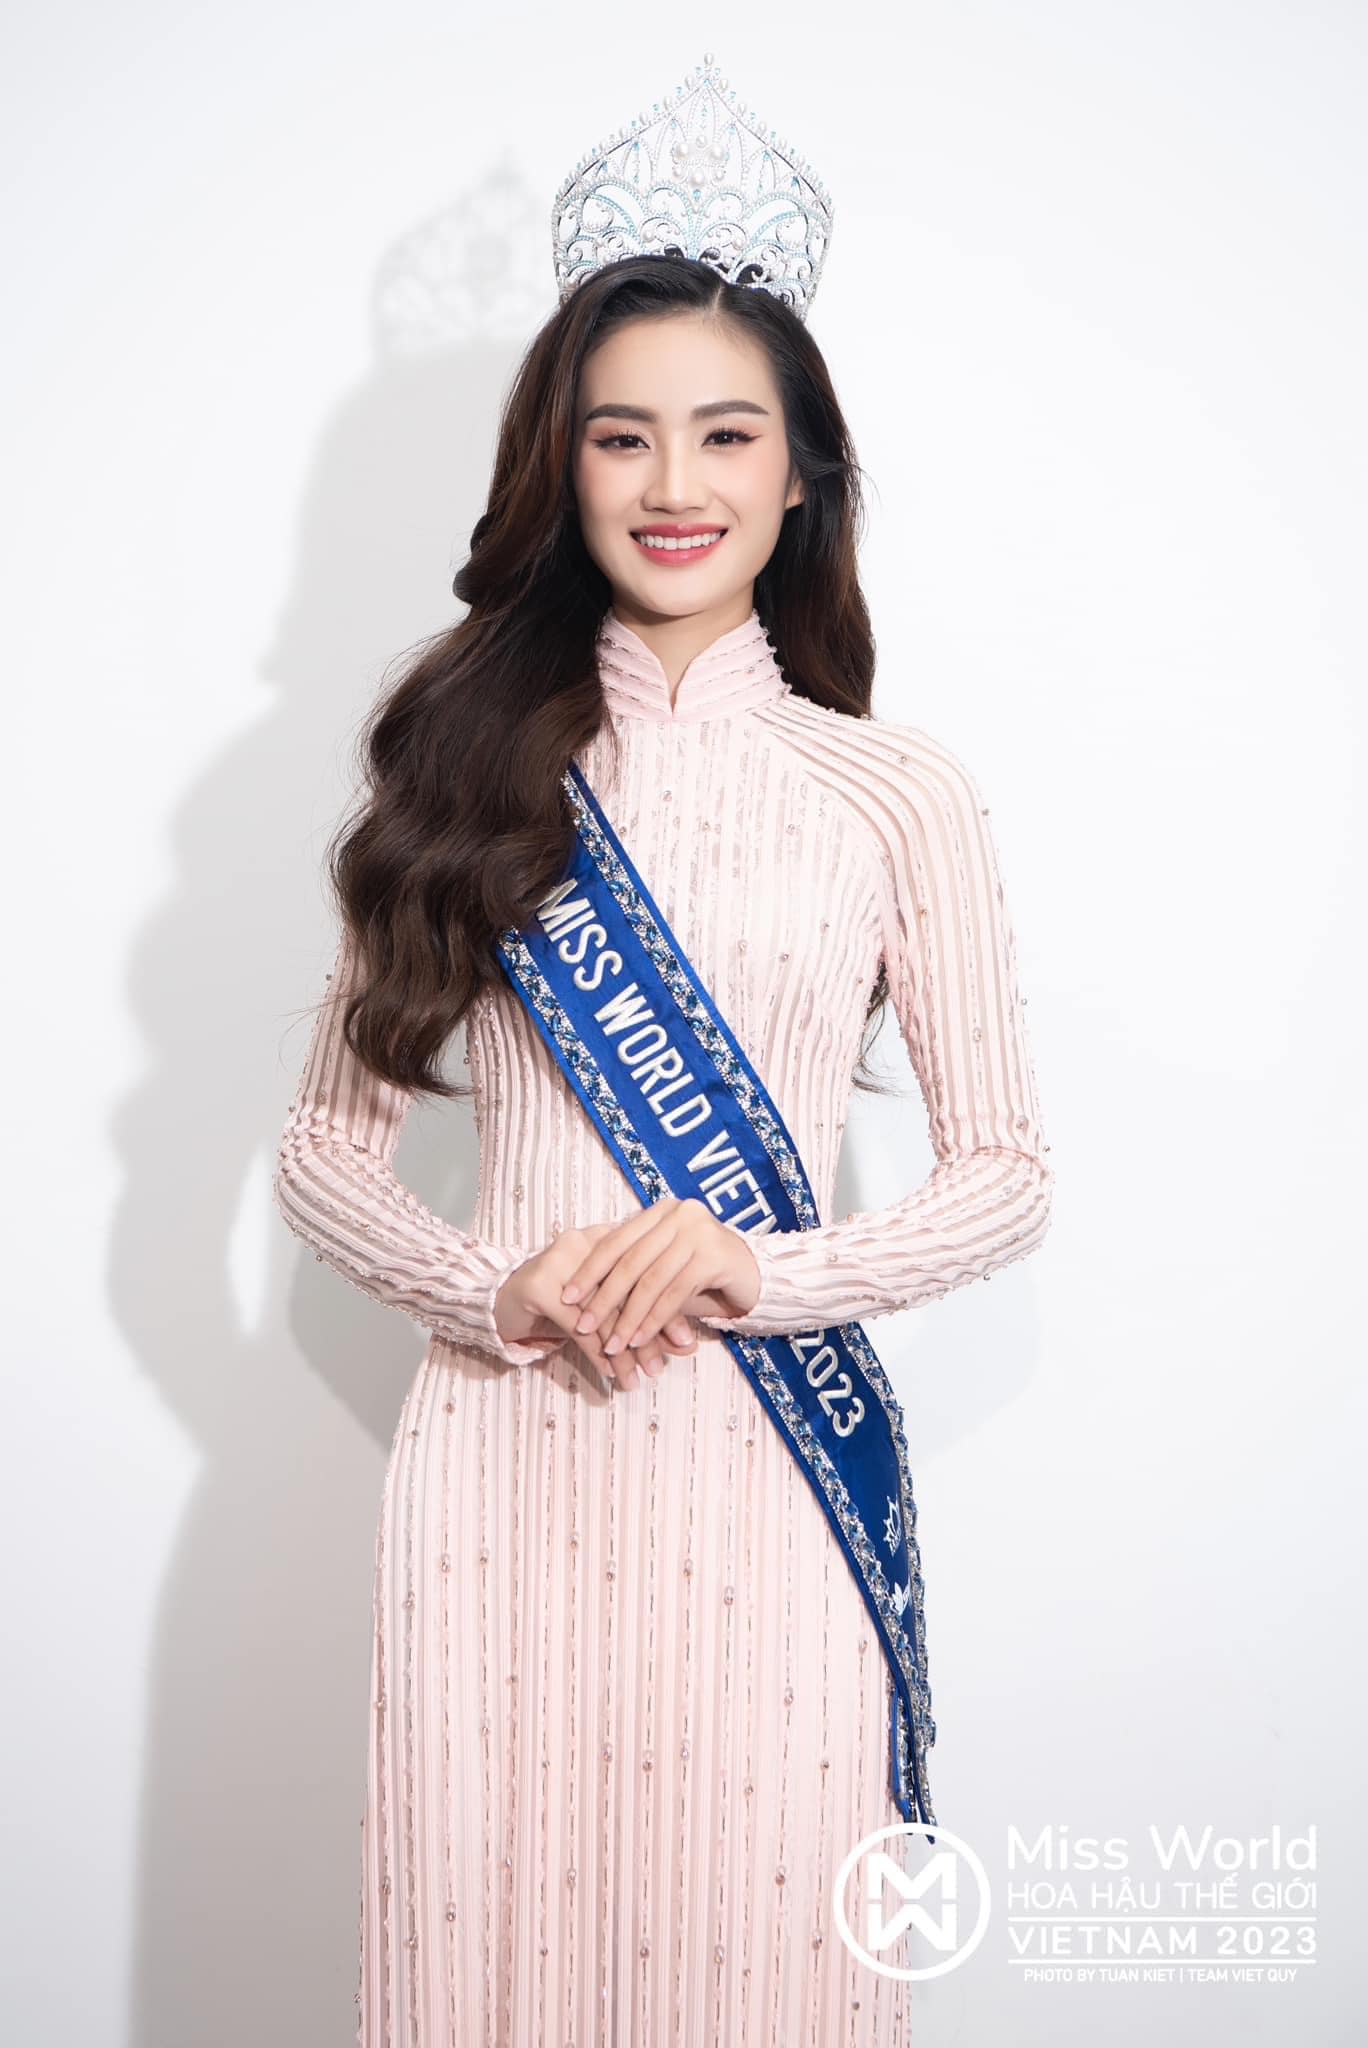 Tân Miss World Vietnam 2023 bị đề nghị tước bỏ danh hiệu chỉ sau 1 tuần đăng quang, chuyện gì đây? - Ảnh 2.